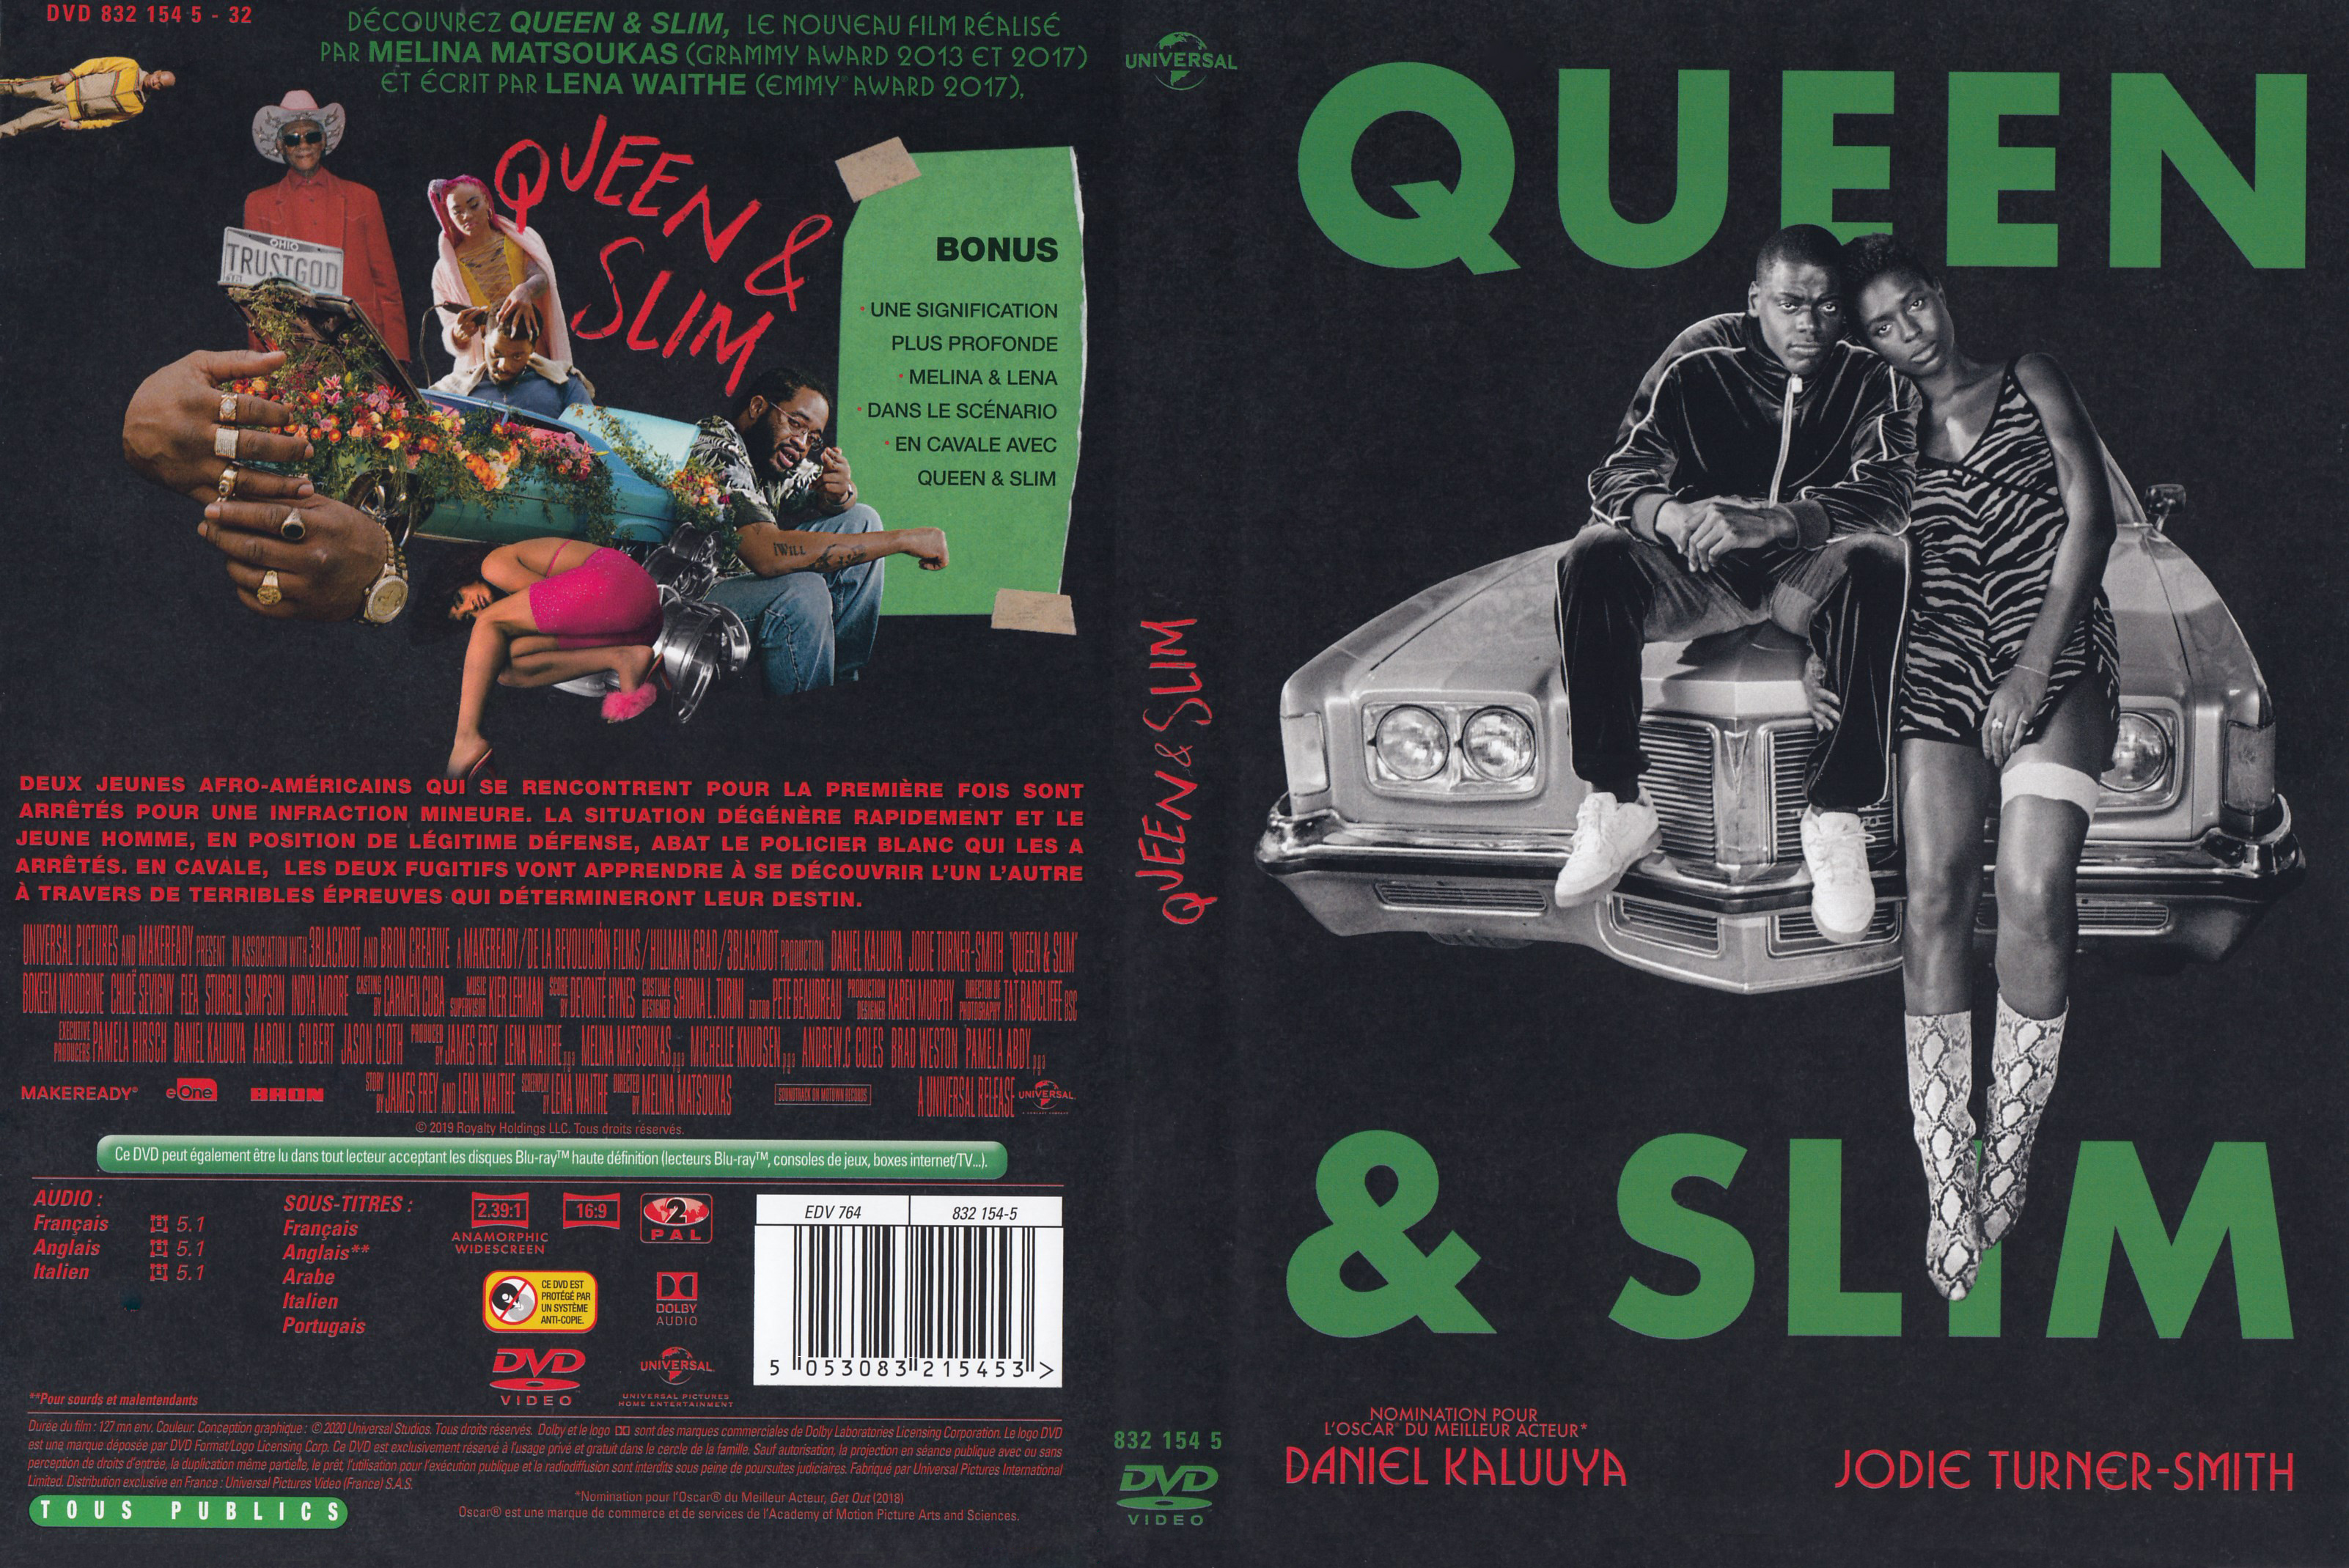 Jaquette DVD Queen & Slim